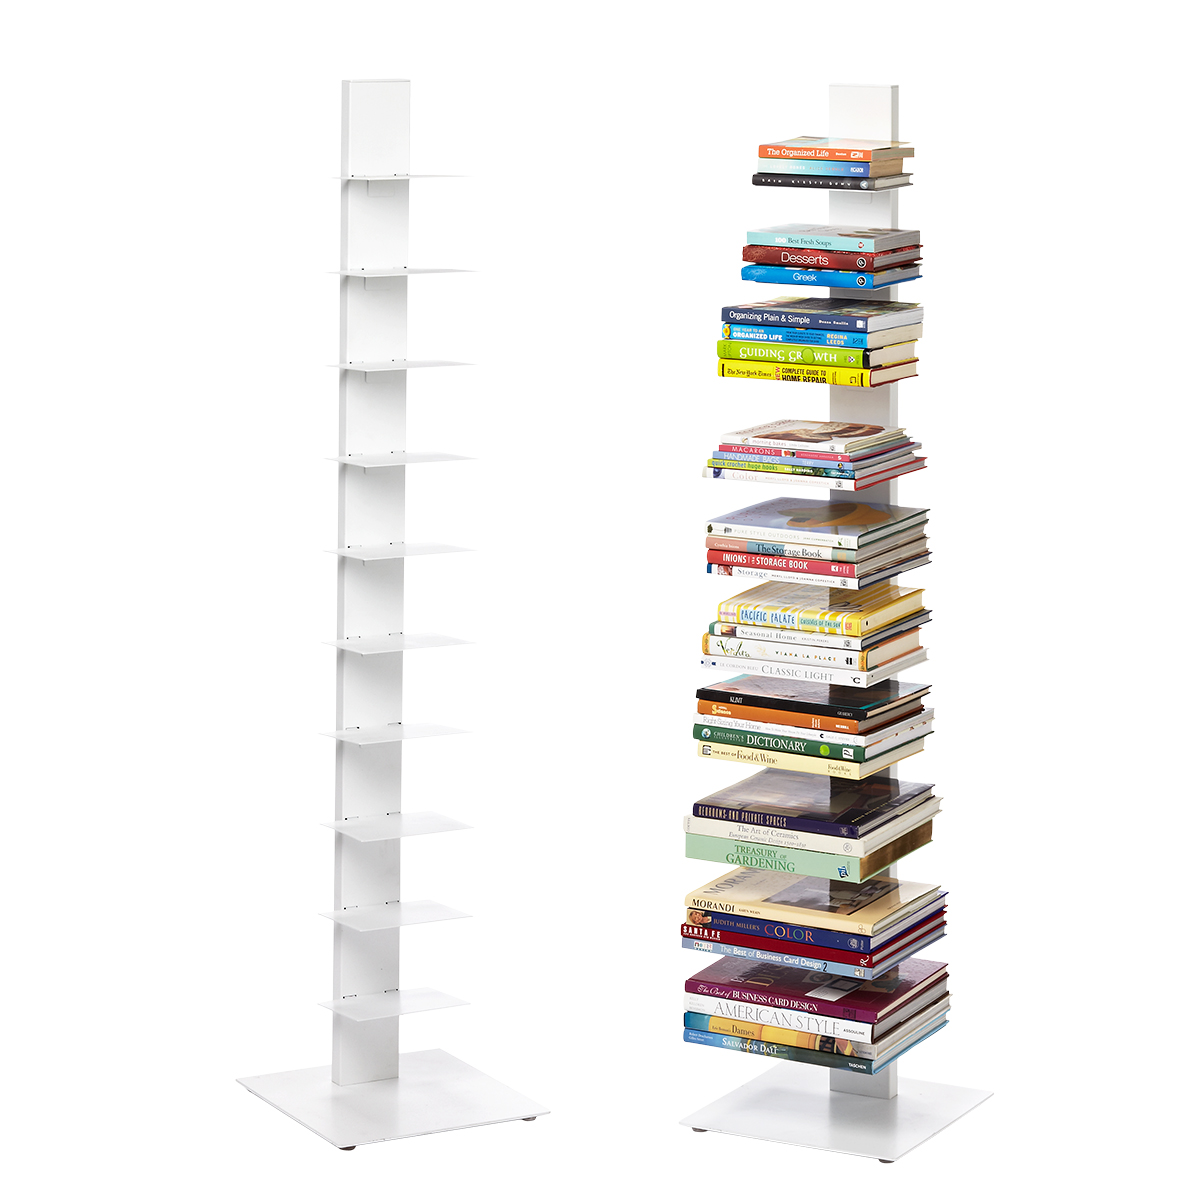 Floating Invisible Bookshelf Invisible Floating Bookshelf Floating